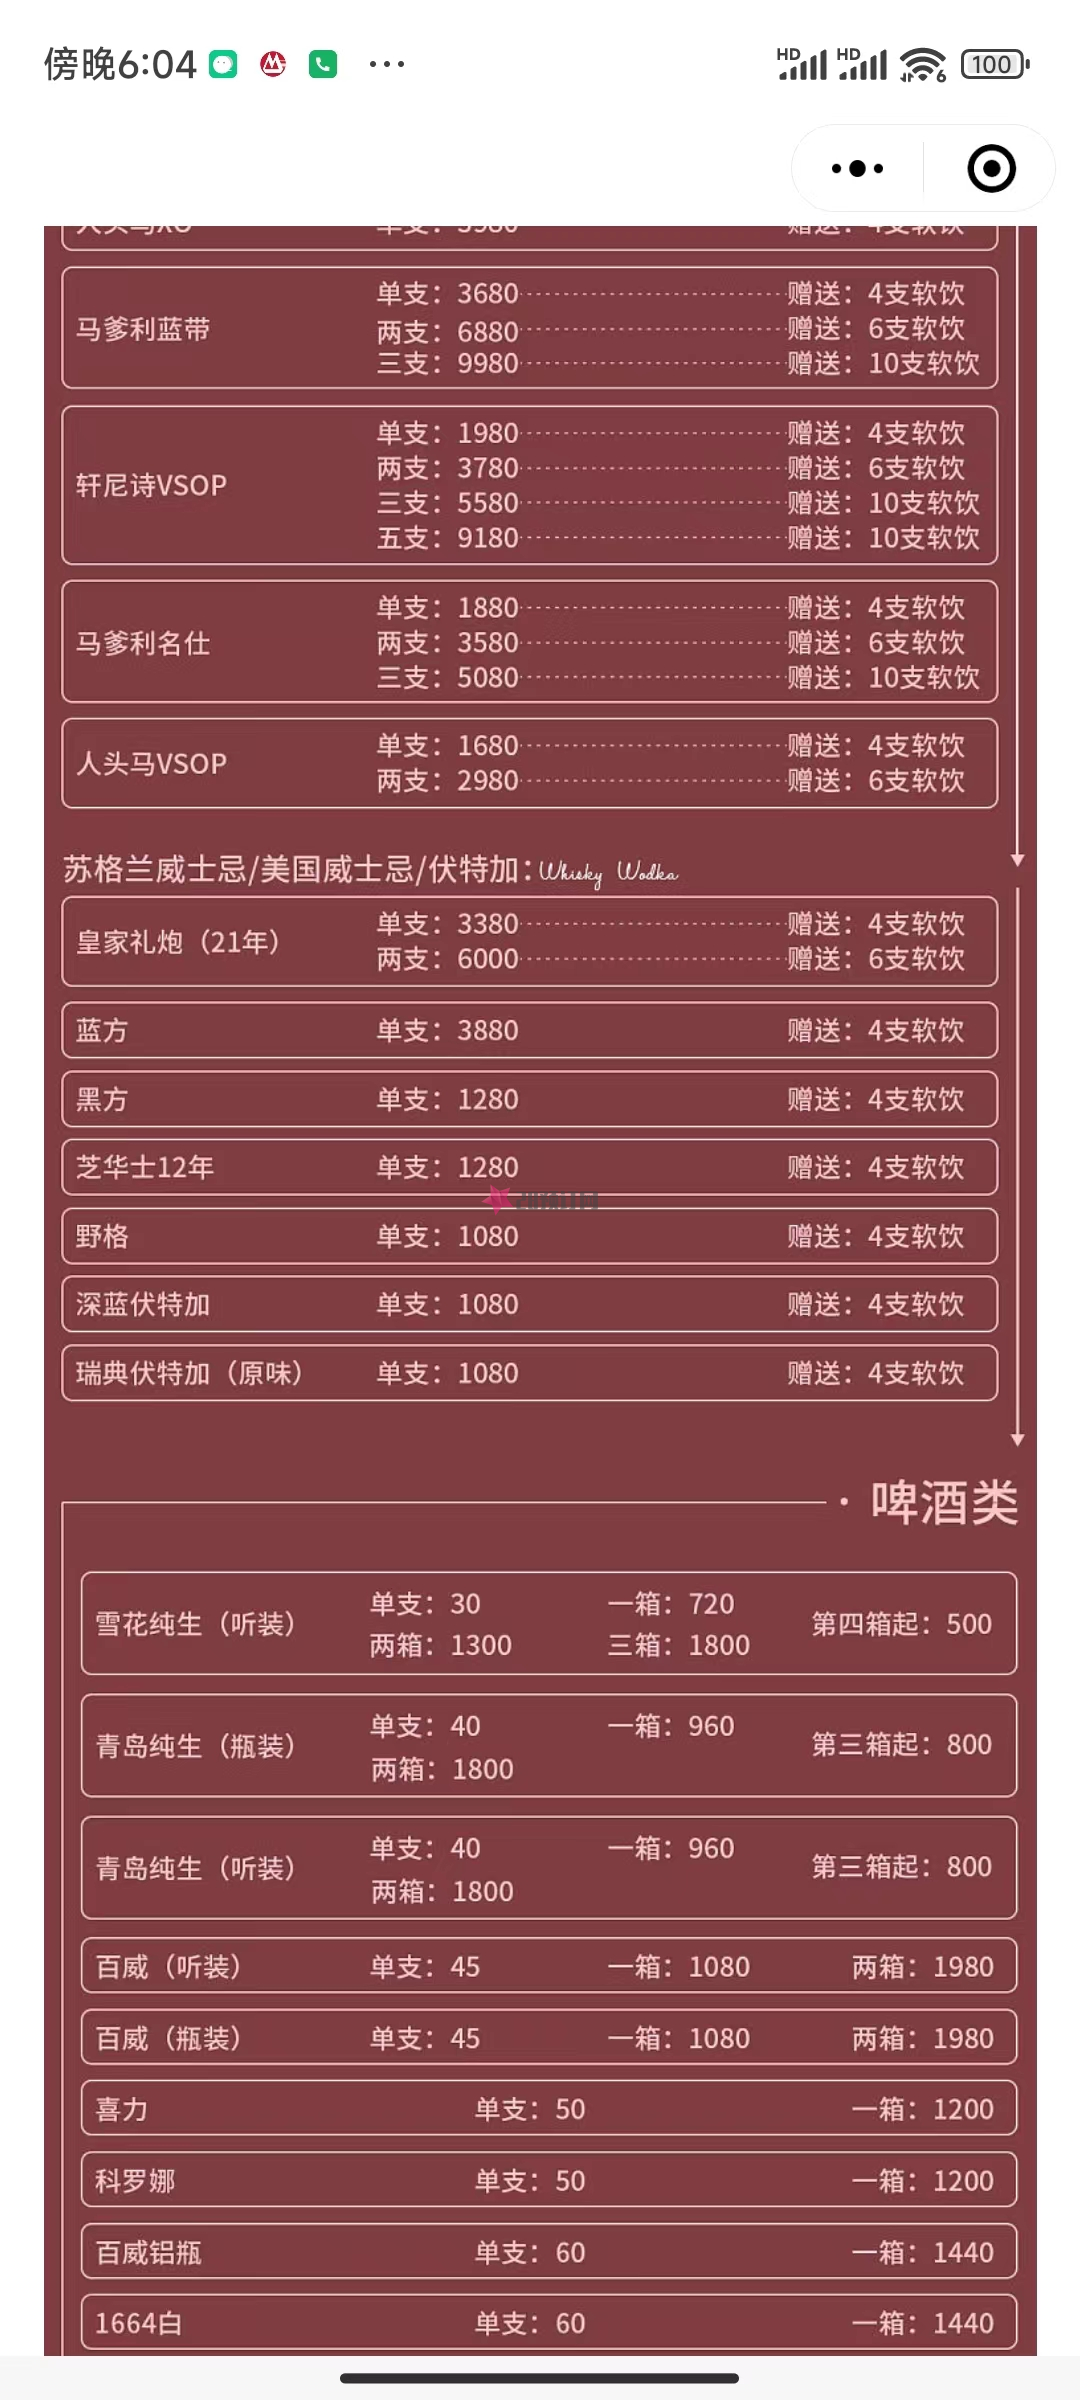 常州东晟KTV营业地址,预订电话,包厢价格,消费点评(天宁延陵中路)(图1)